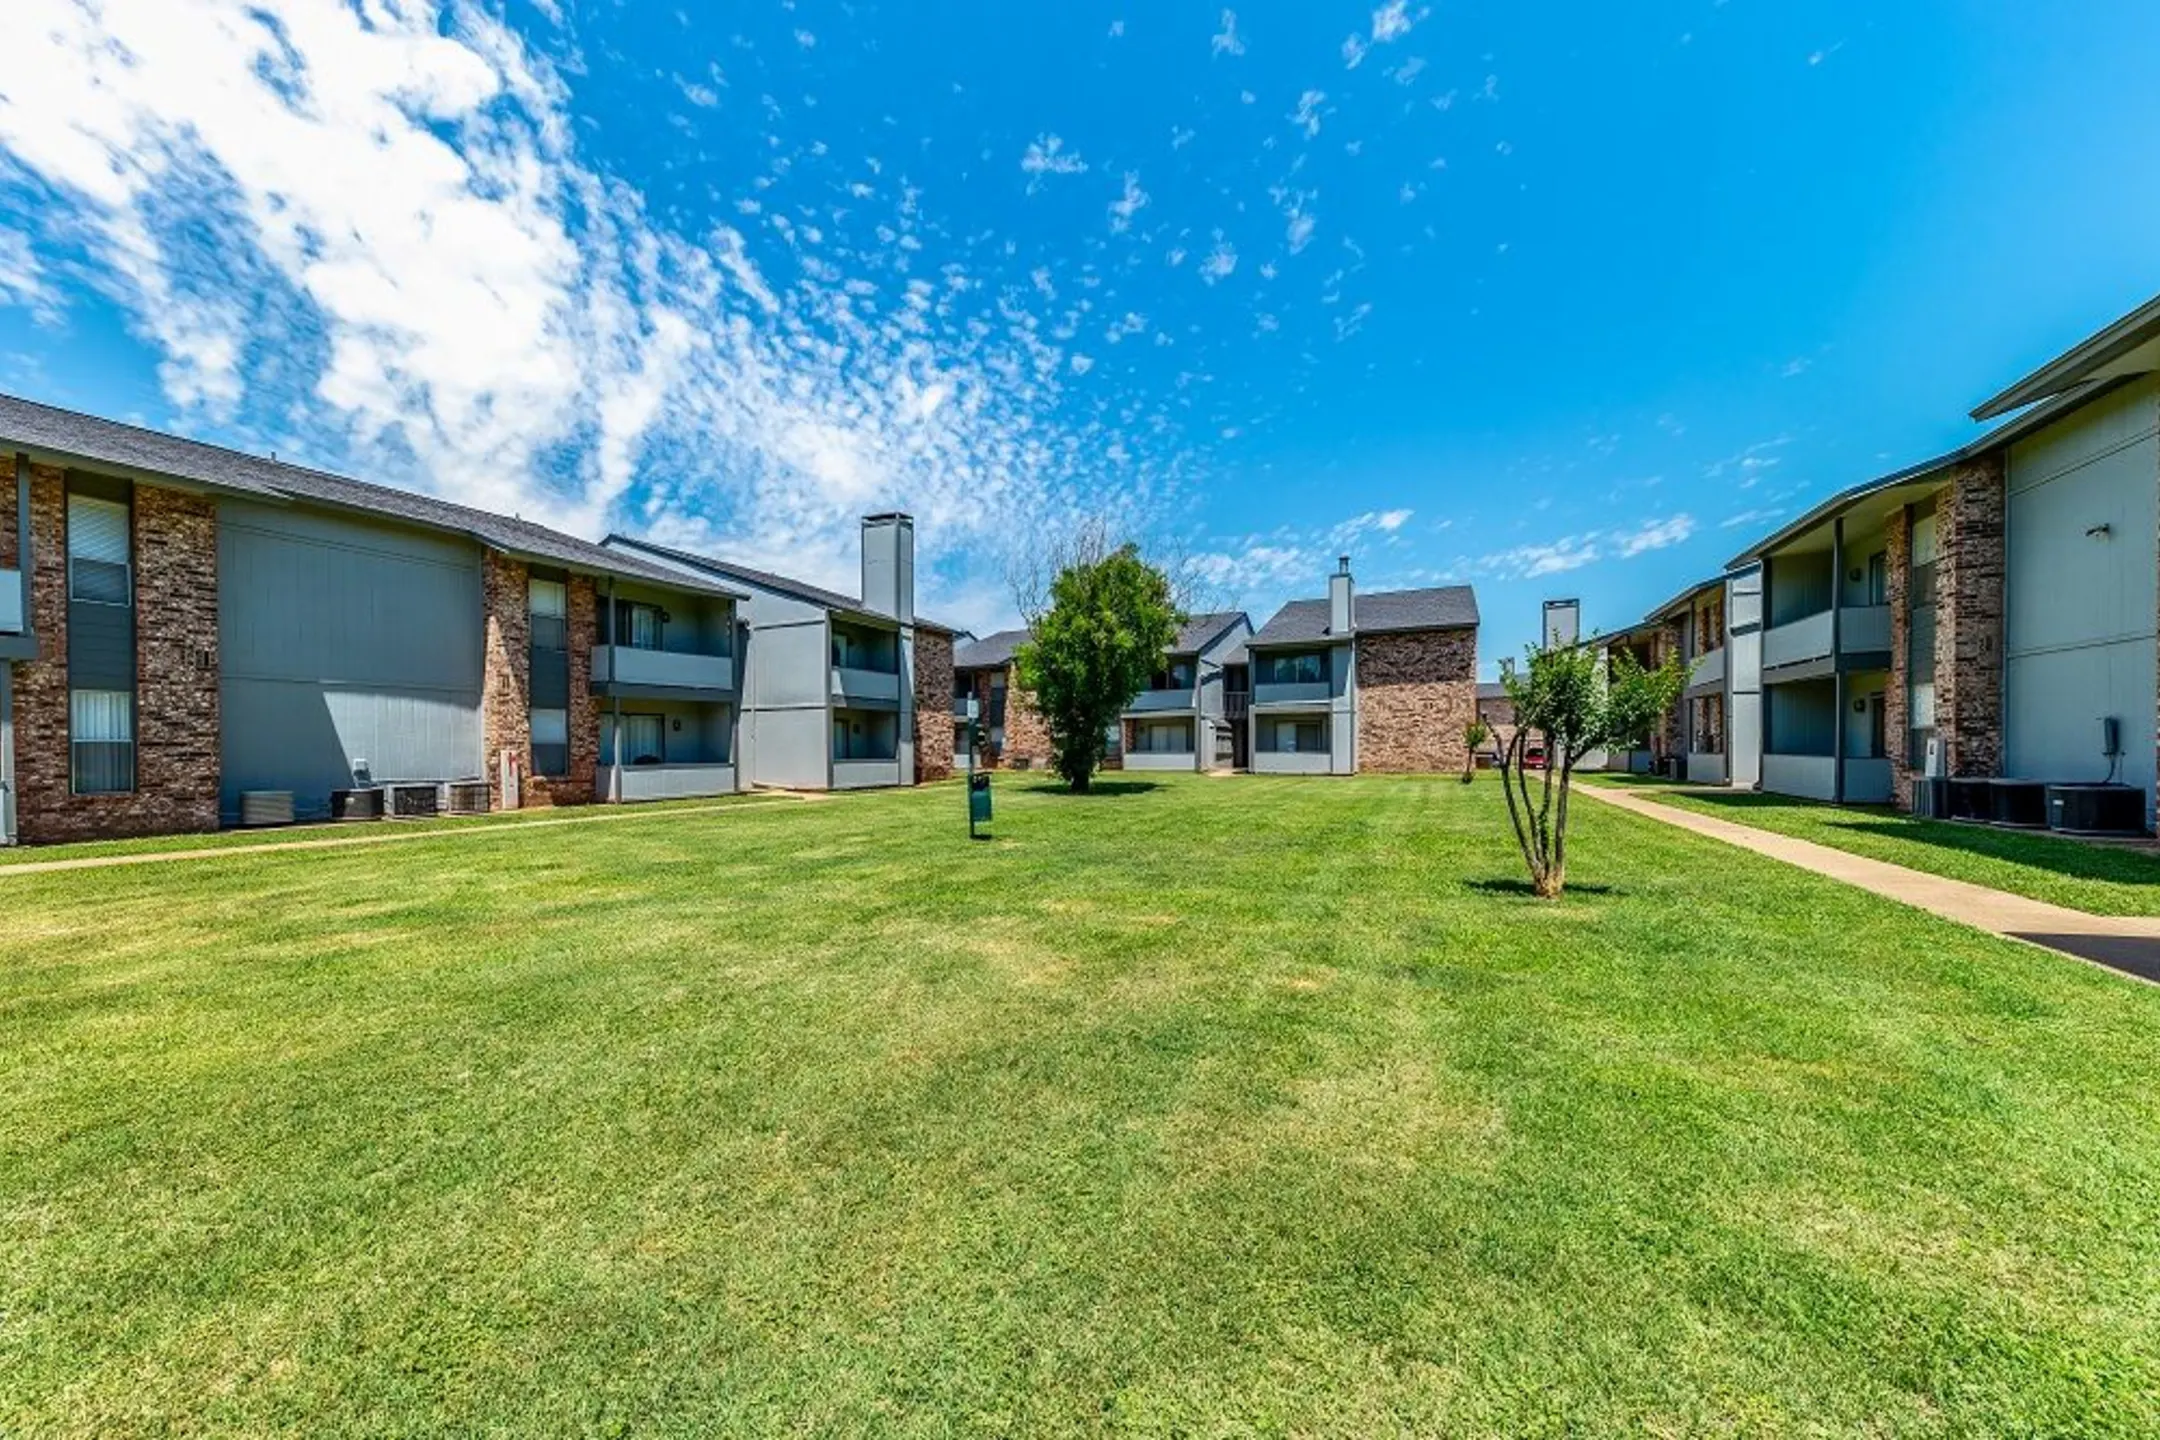 Arbor Creek Apartments 4000 Weeks Park Ln Wichita Falls Tx Apartments For Rent Rent